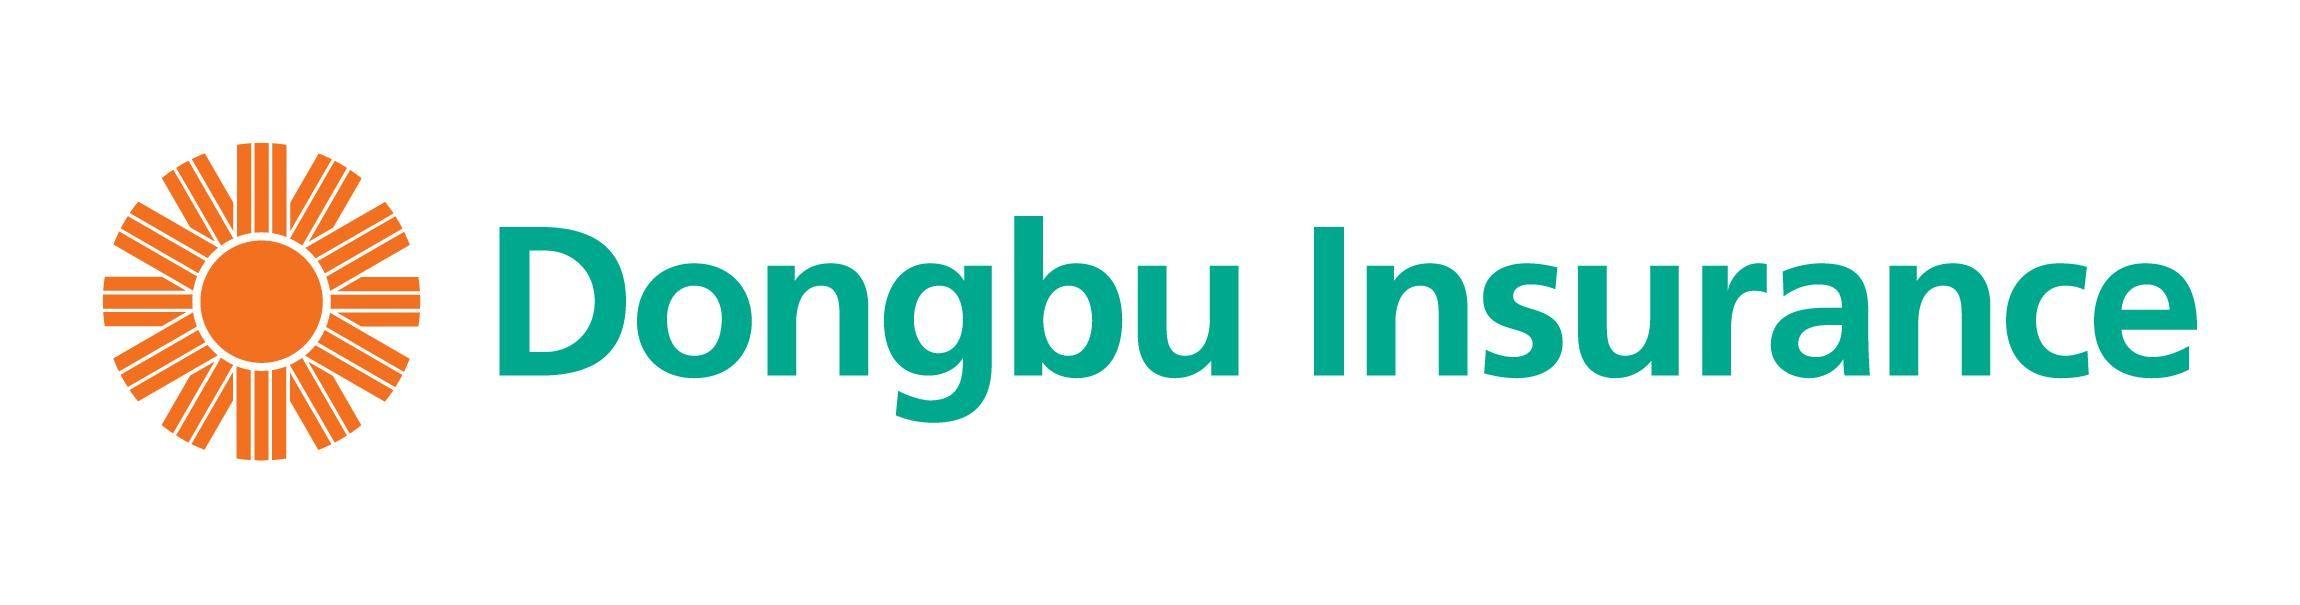 Dongbu Logo - Dongbu Insurance « Logos & Brands Directory